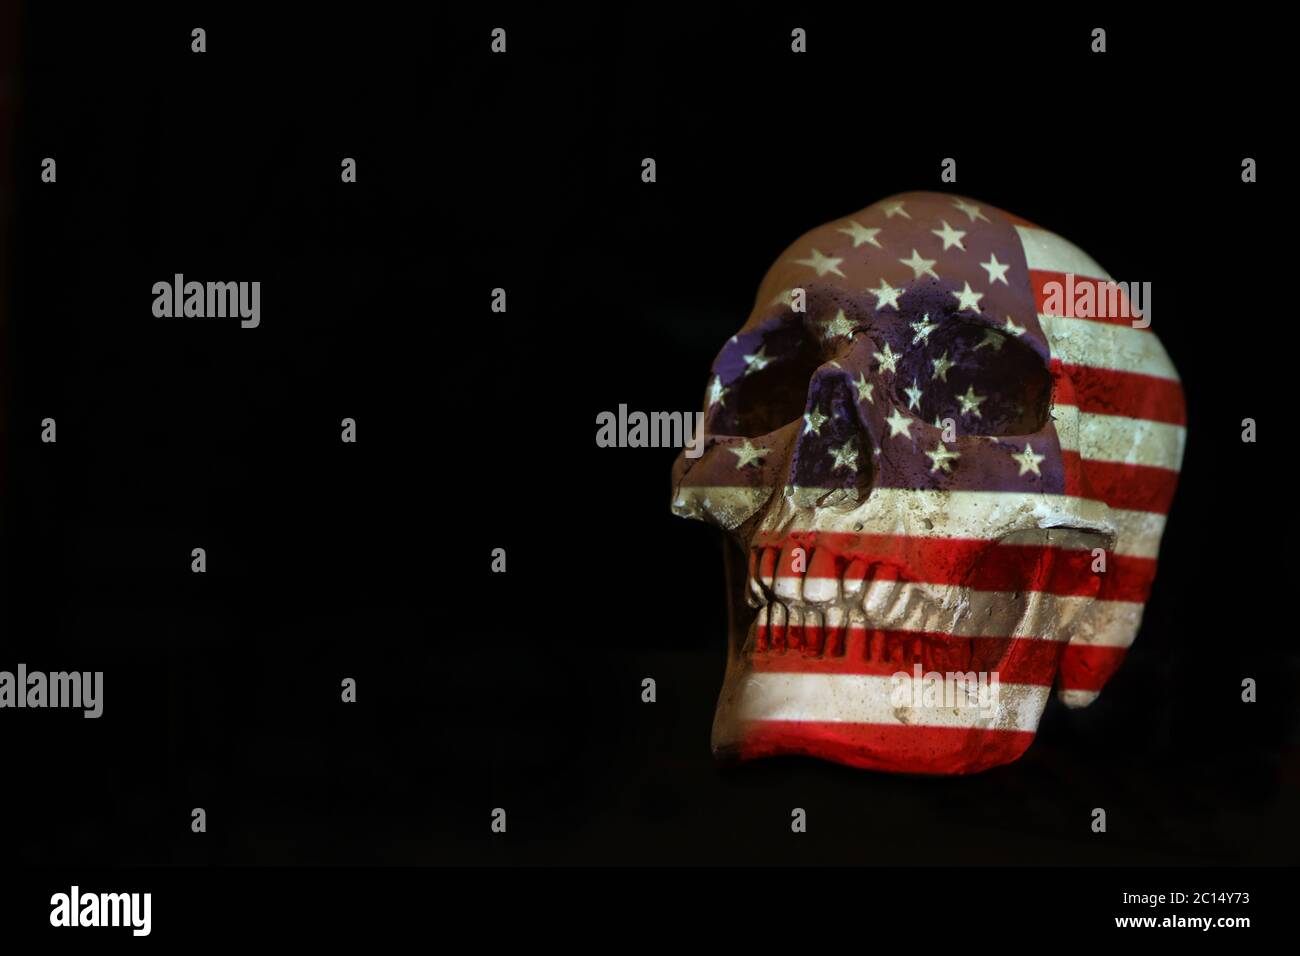 Isolierter weißer Schädel mit der amerikanischen Flagge der Vereinigten Staaten von Amerika, die darüber projiziert wird. Schlichter schwarzer Hintergrund. Covid-19 Corona-Virus oder Pistole Kontrolle Stockfoto